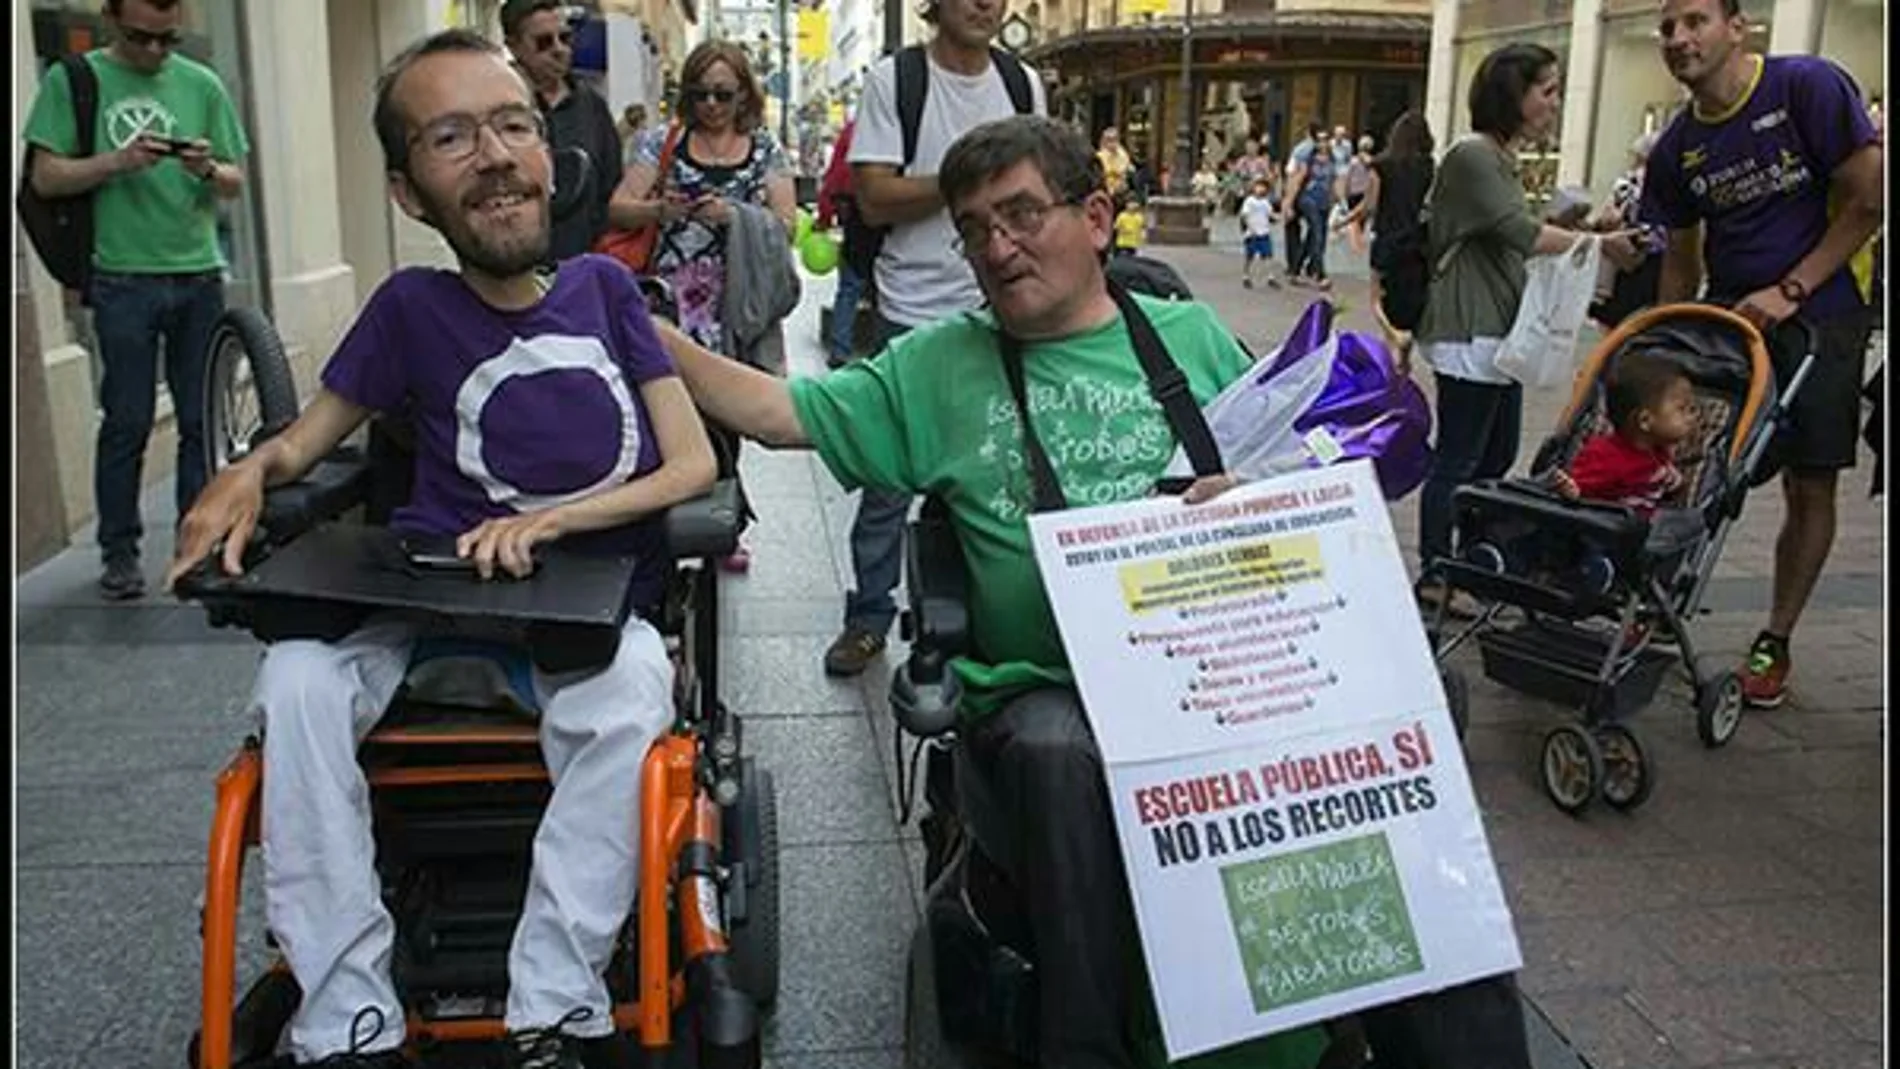 Pablo Echenique y Antonio Aramayona en una imagen subida a Twitter por el dirigente de Podemos.